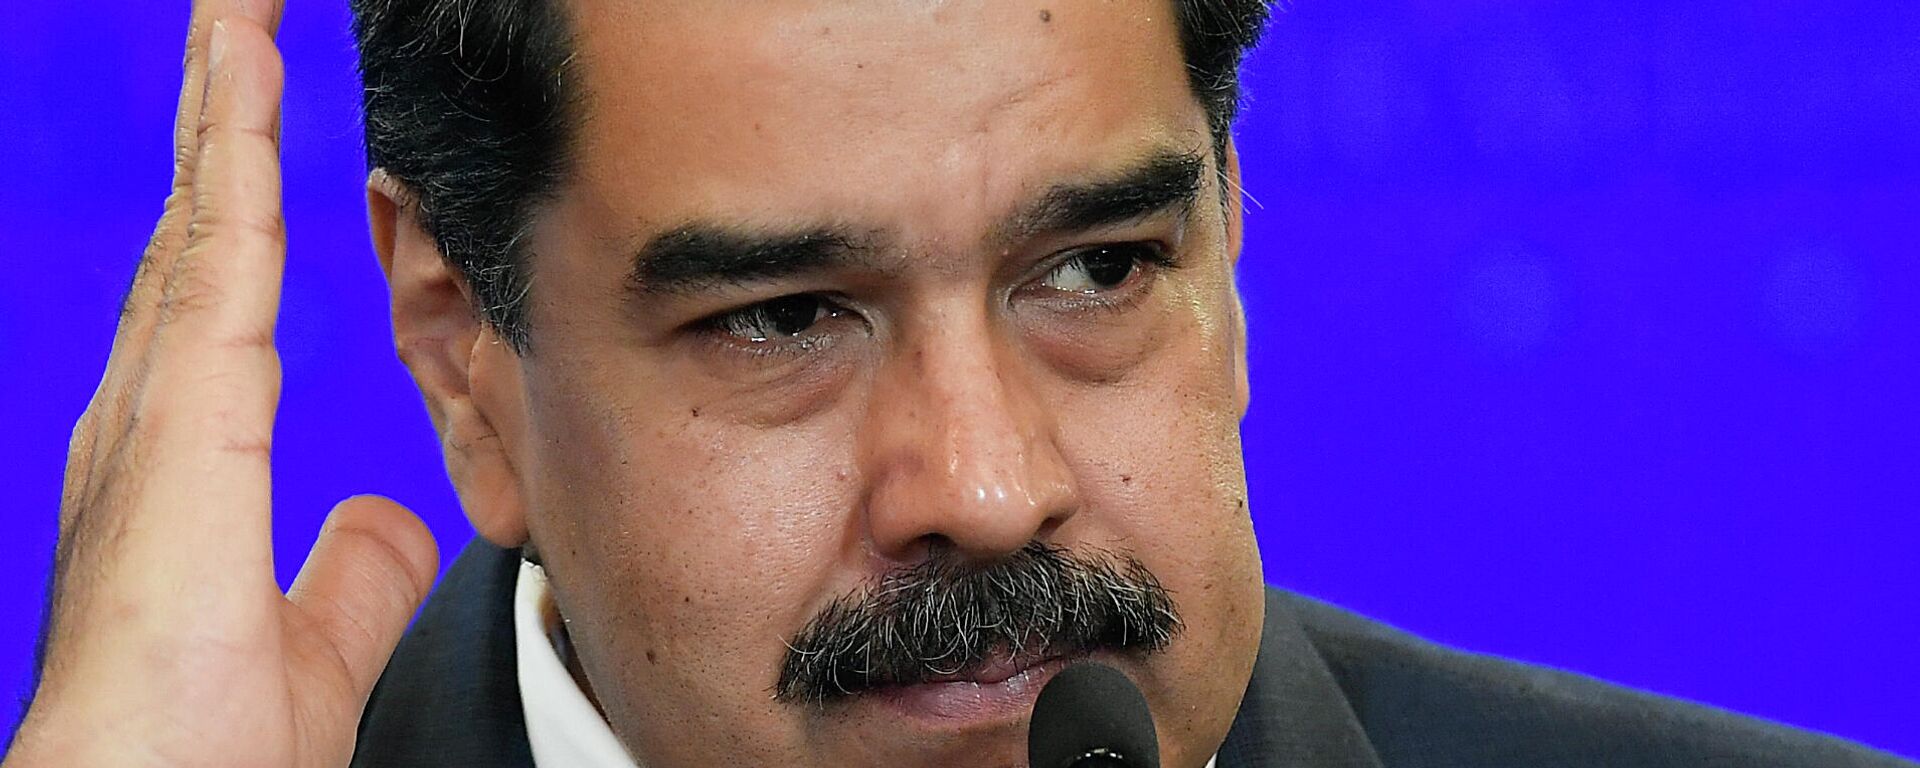 Nicolás Maduro, presidente de Venezuela - Sputnik Mundo, 1920, 19.10.2021